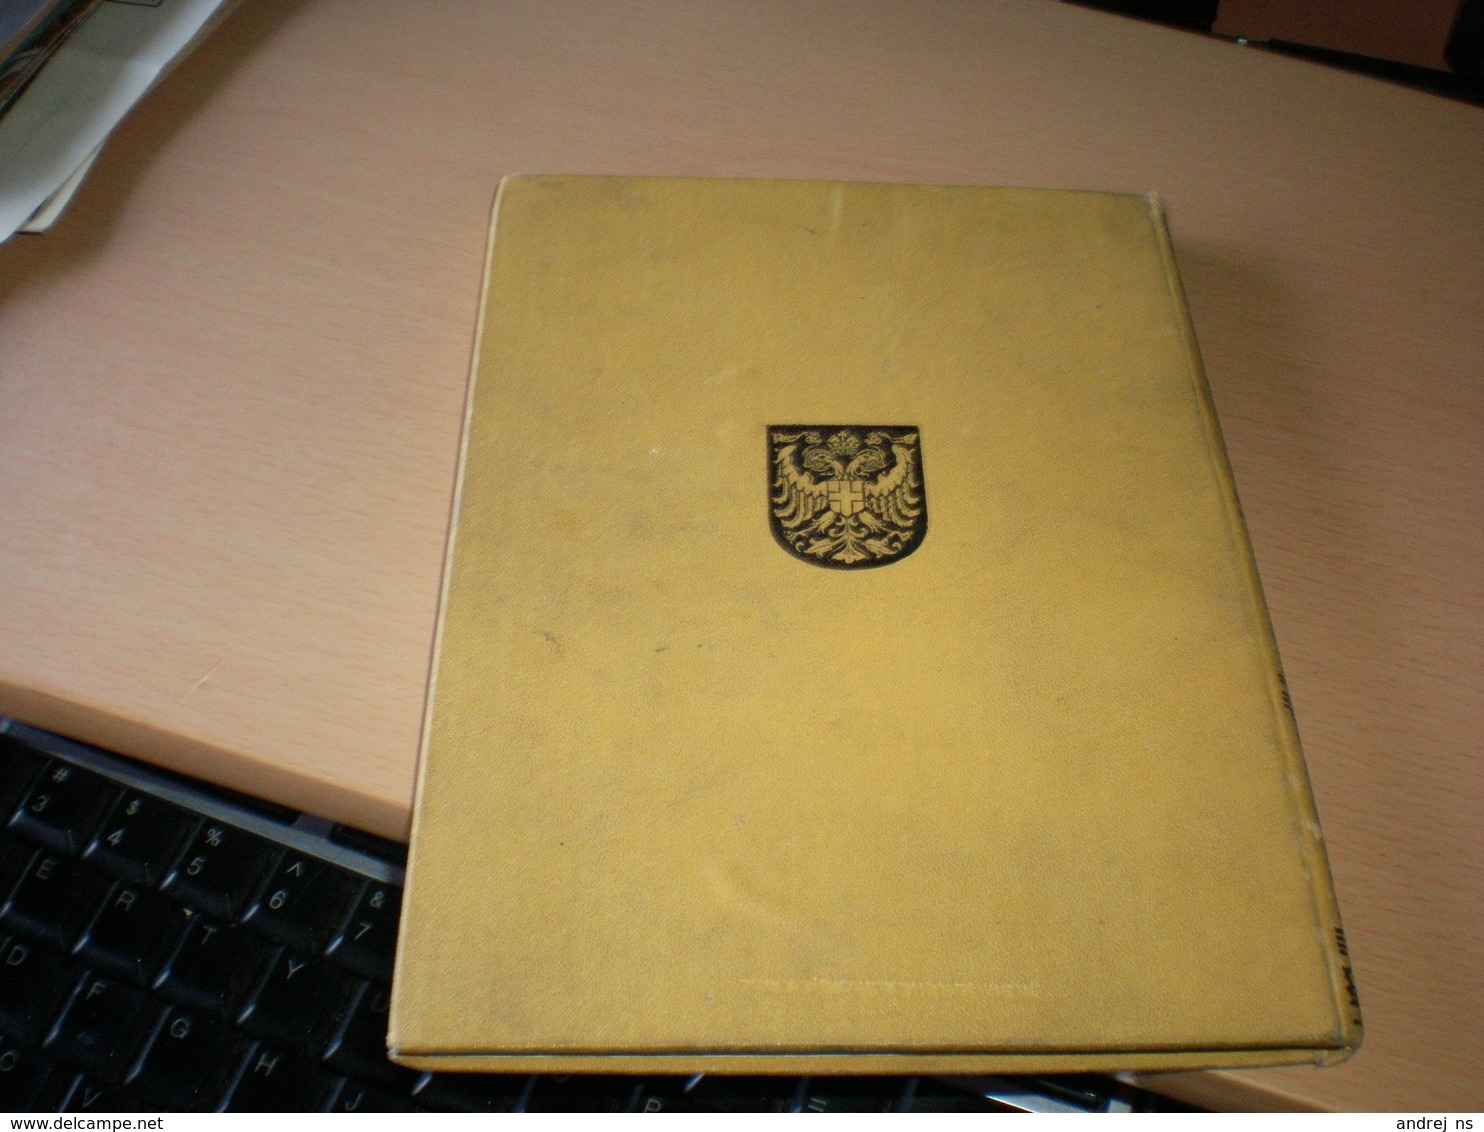 Wien Seit  60 Jahren ein Album fur die Jugend 1908 Kaiser Franz Josef I 96 pages